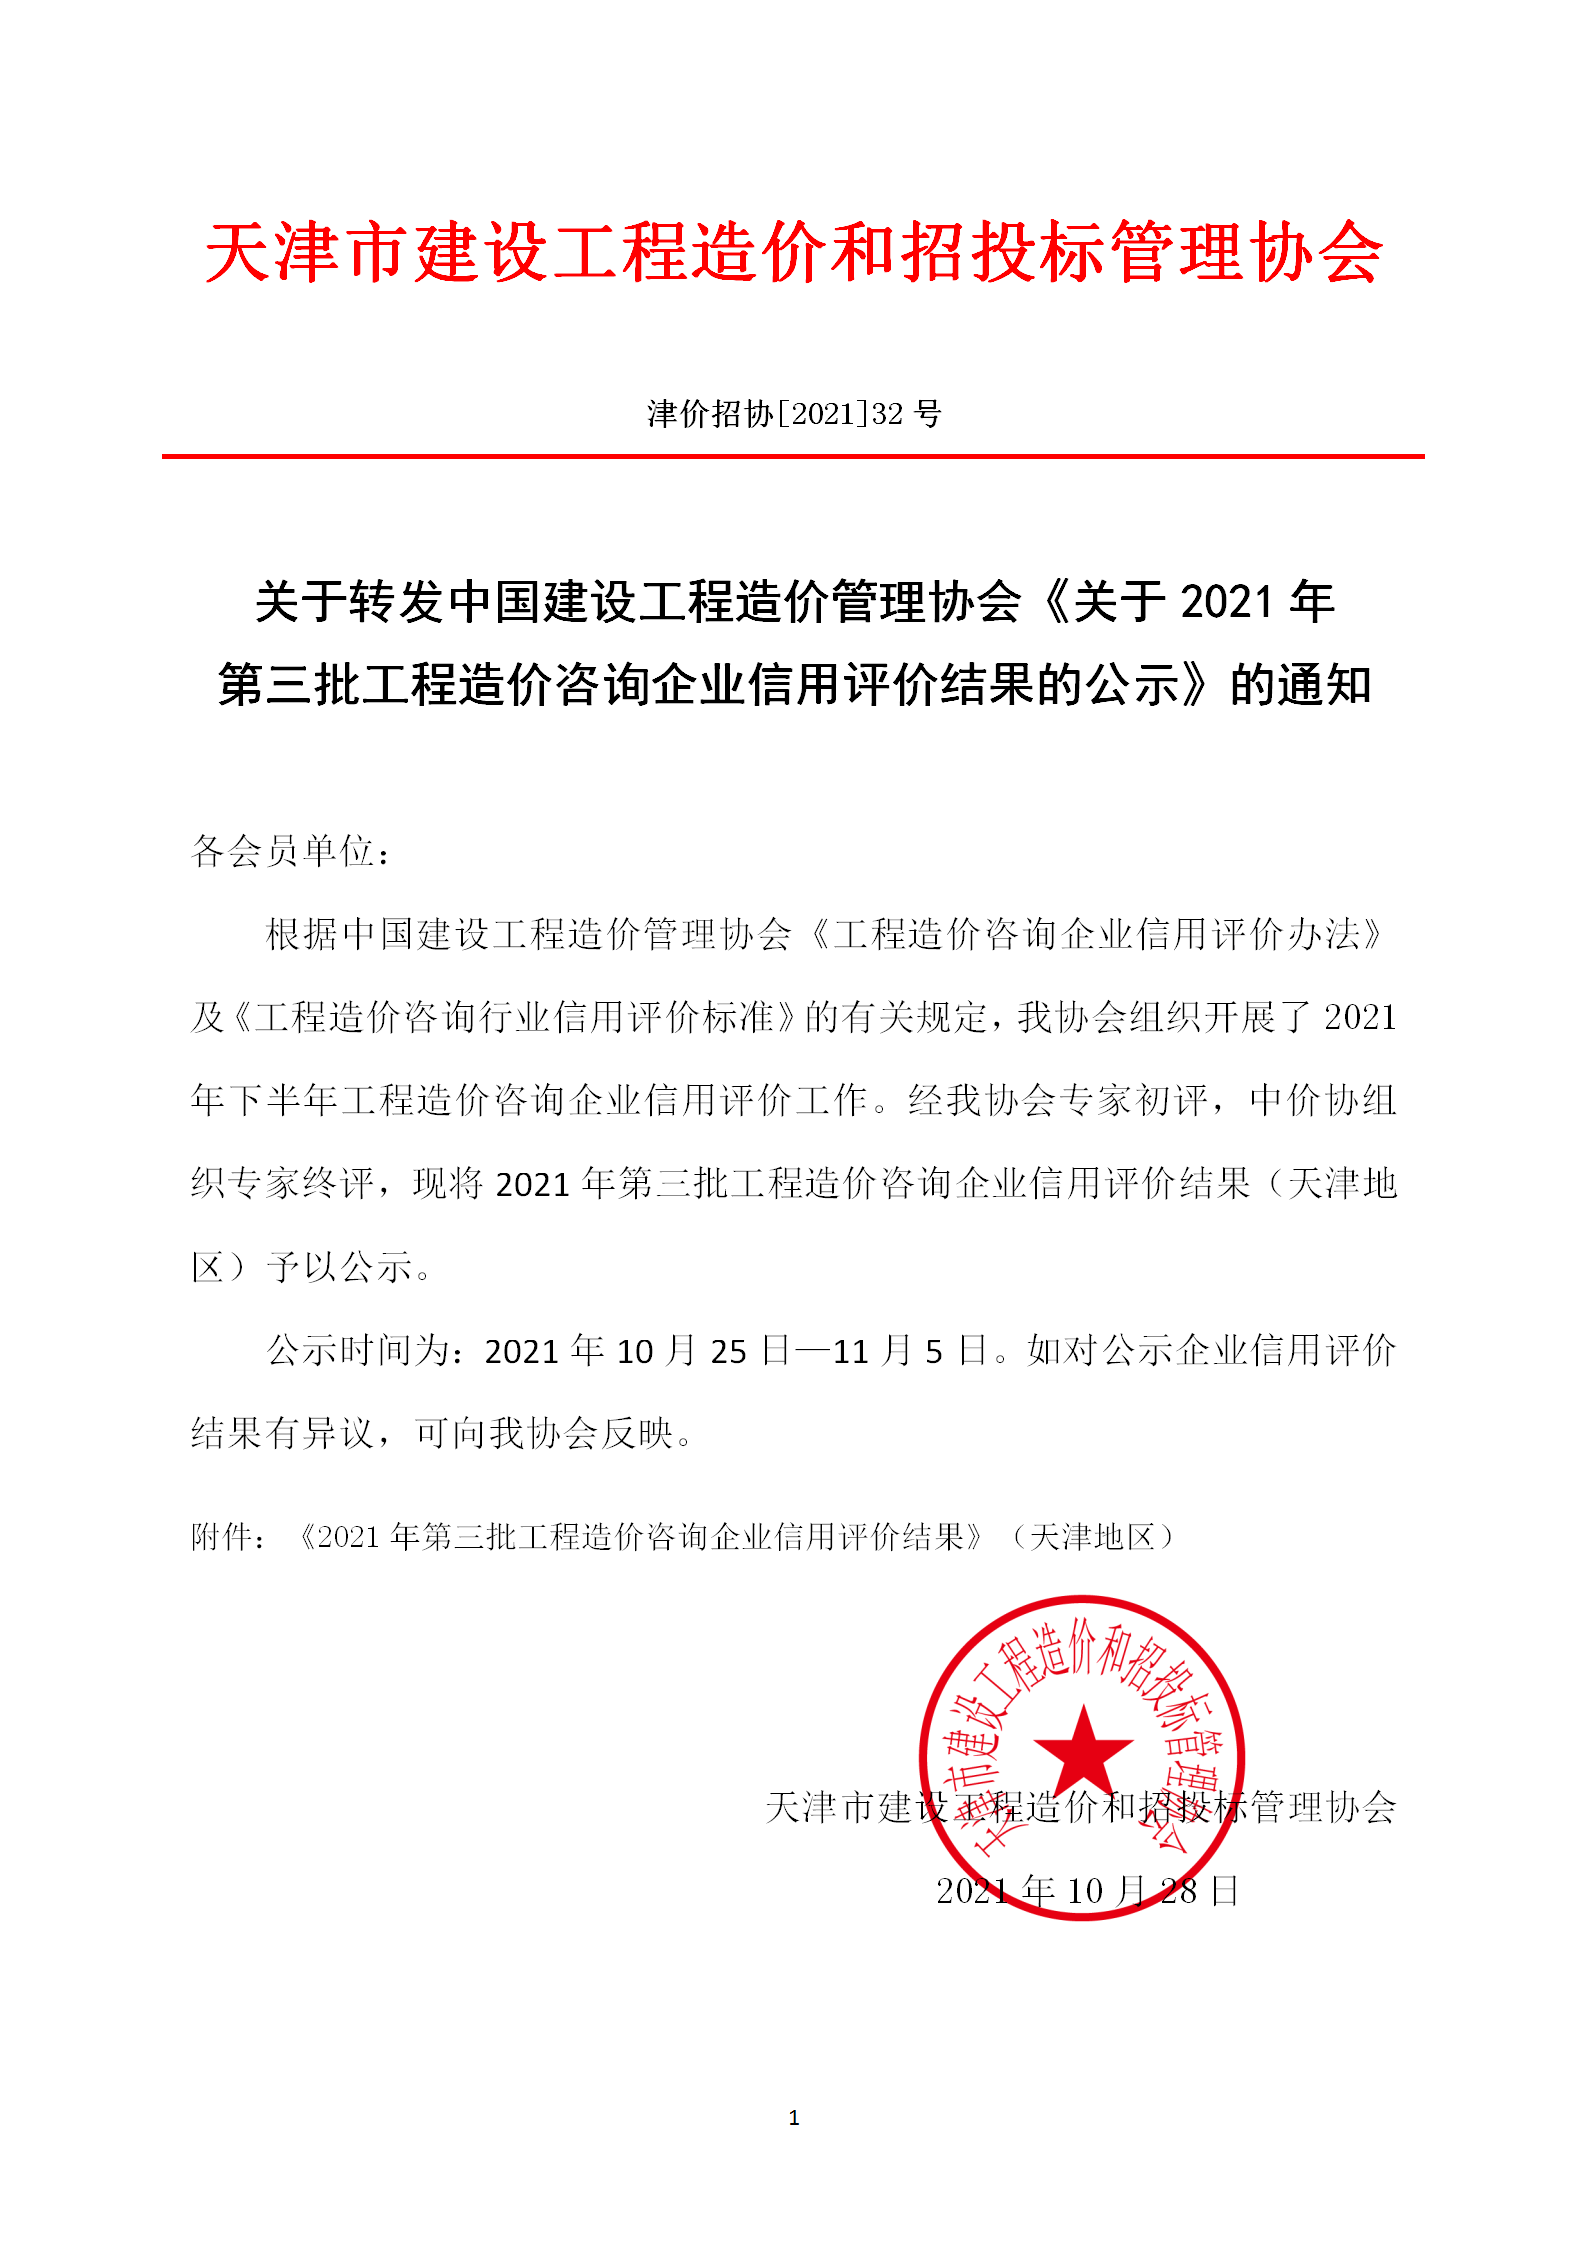 2021年-32号关于转发中国建设工程造价管理协会《关于2021年第三批工程造价咨询企业信用评价结果的公示》的通知(1)_01.png